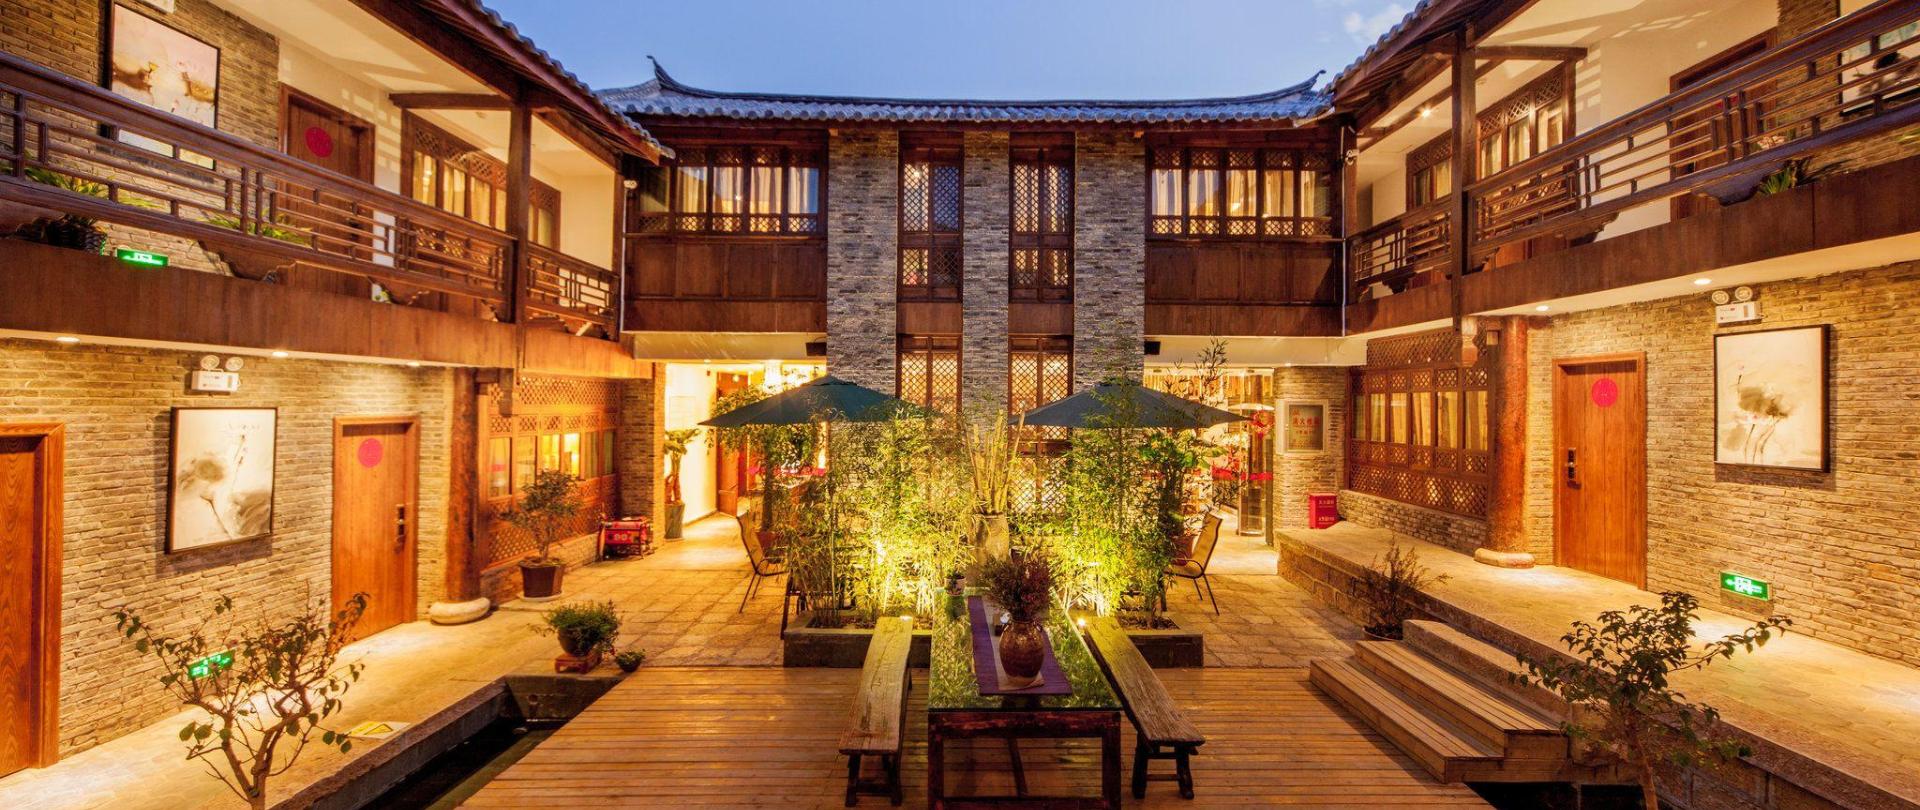 Lijiang Liman Wenzhi No1 Hotel Lijiang China - 